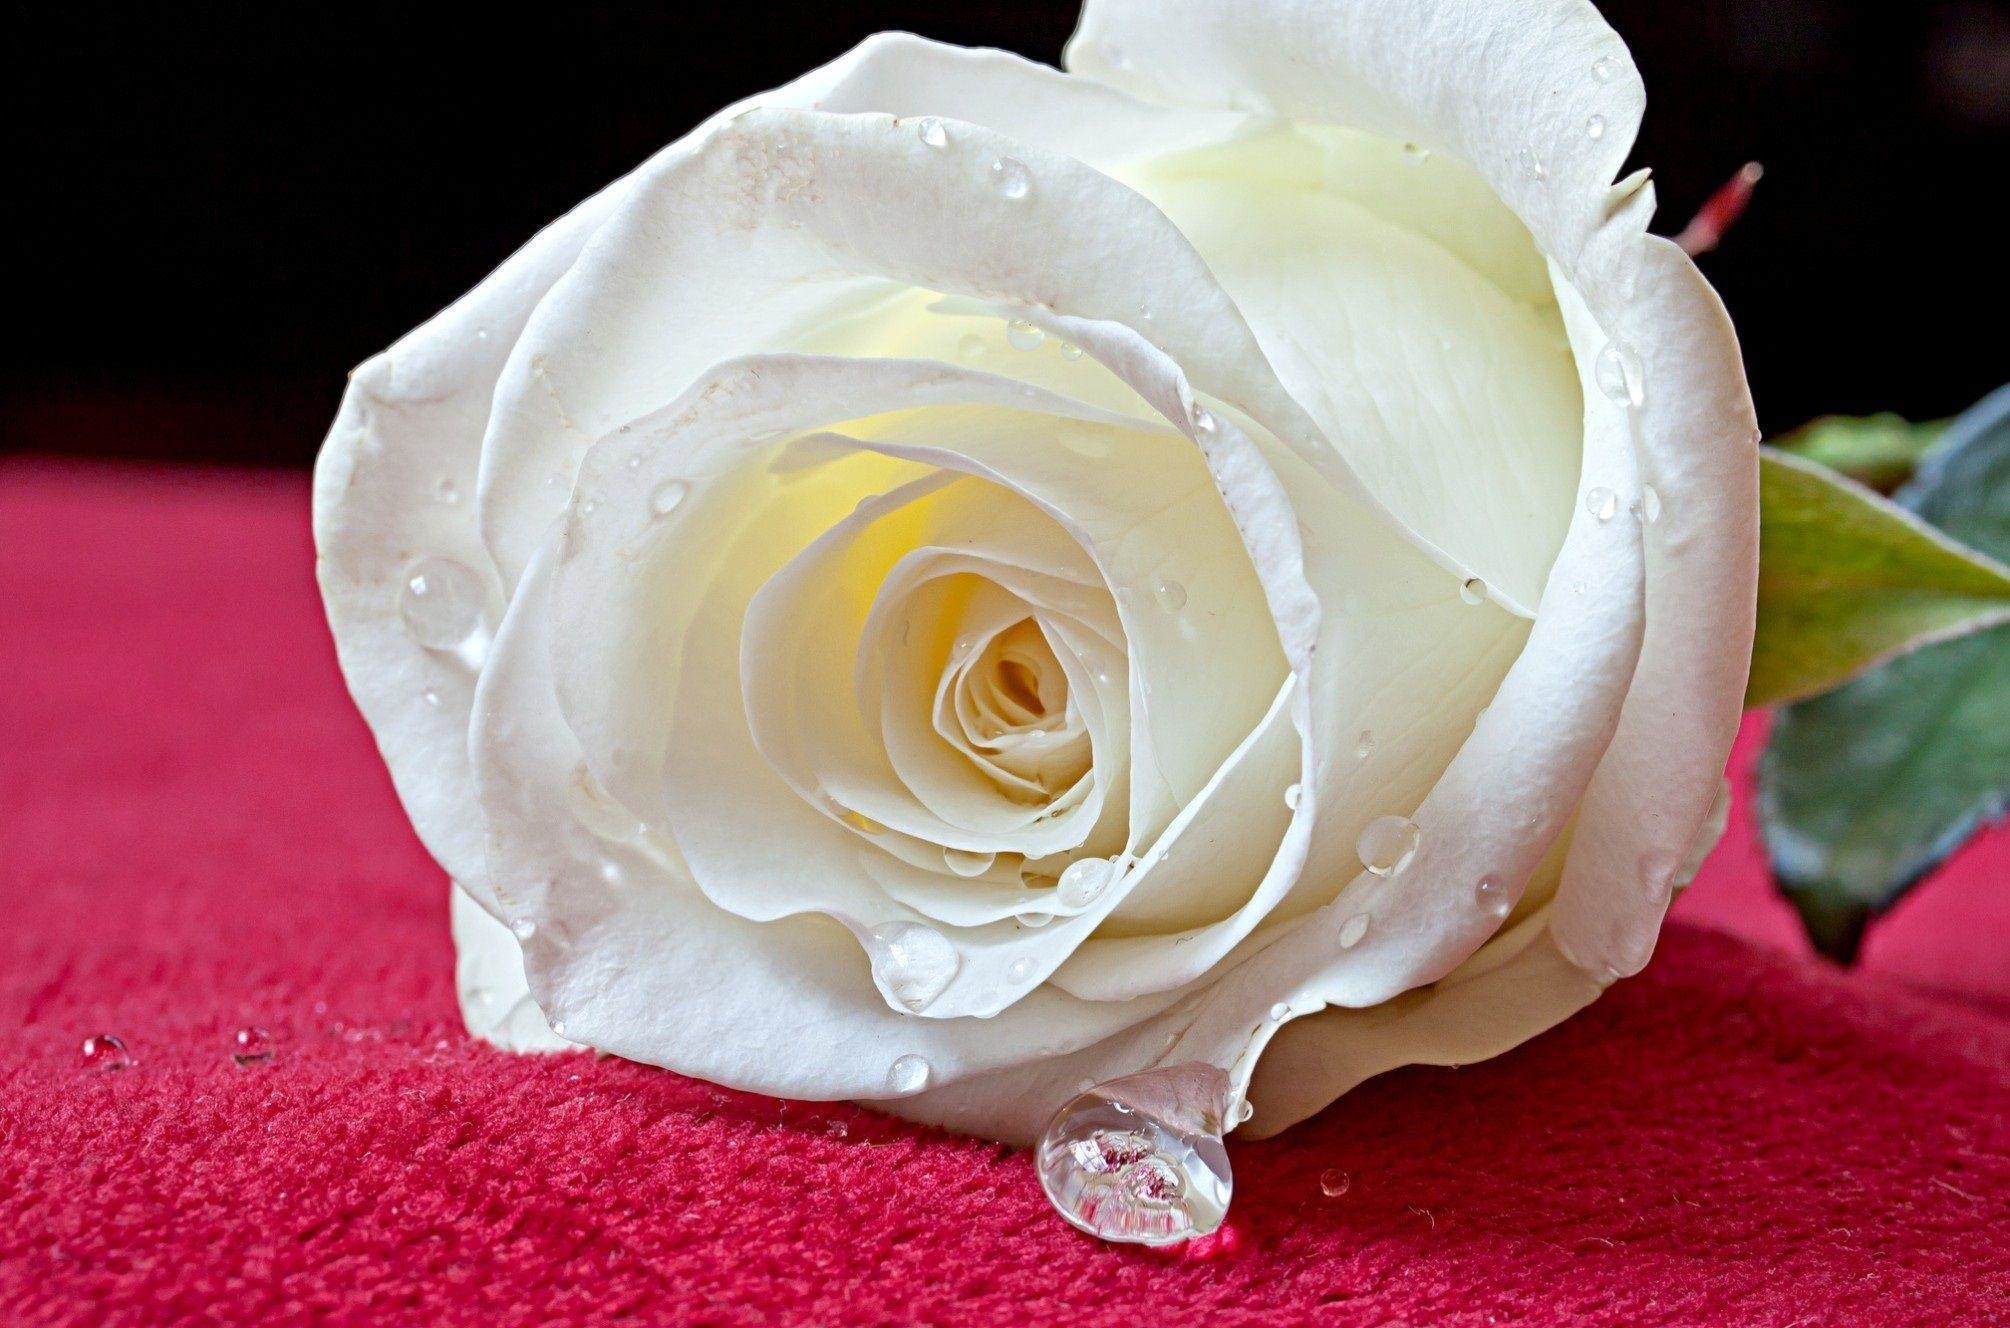 White Rose Wallpaper For Desktop White Rose Wallpaper  White Roses Desktop  Background  2600x1623 Wallpaper  teahubio